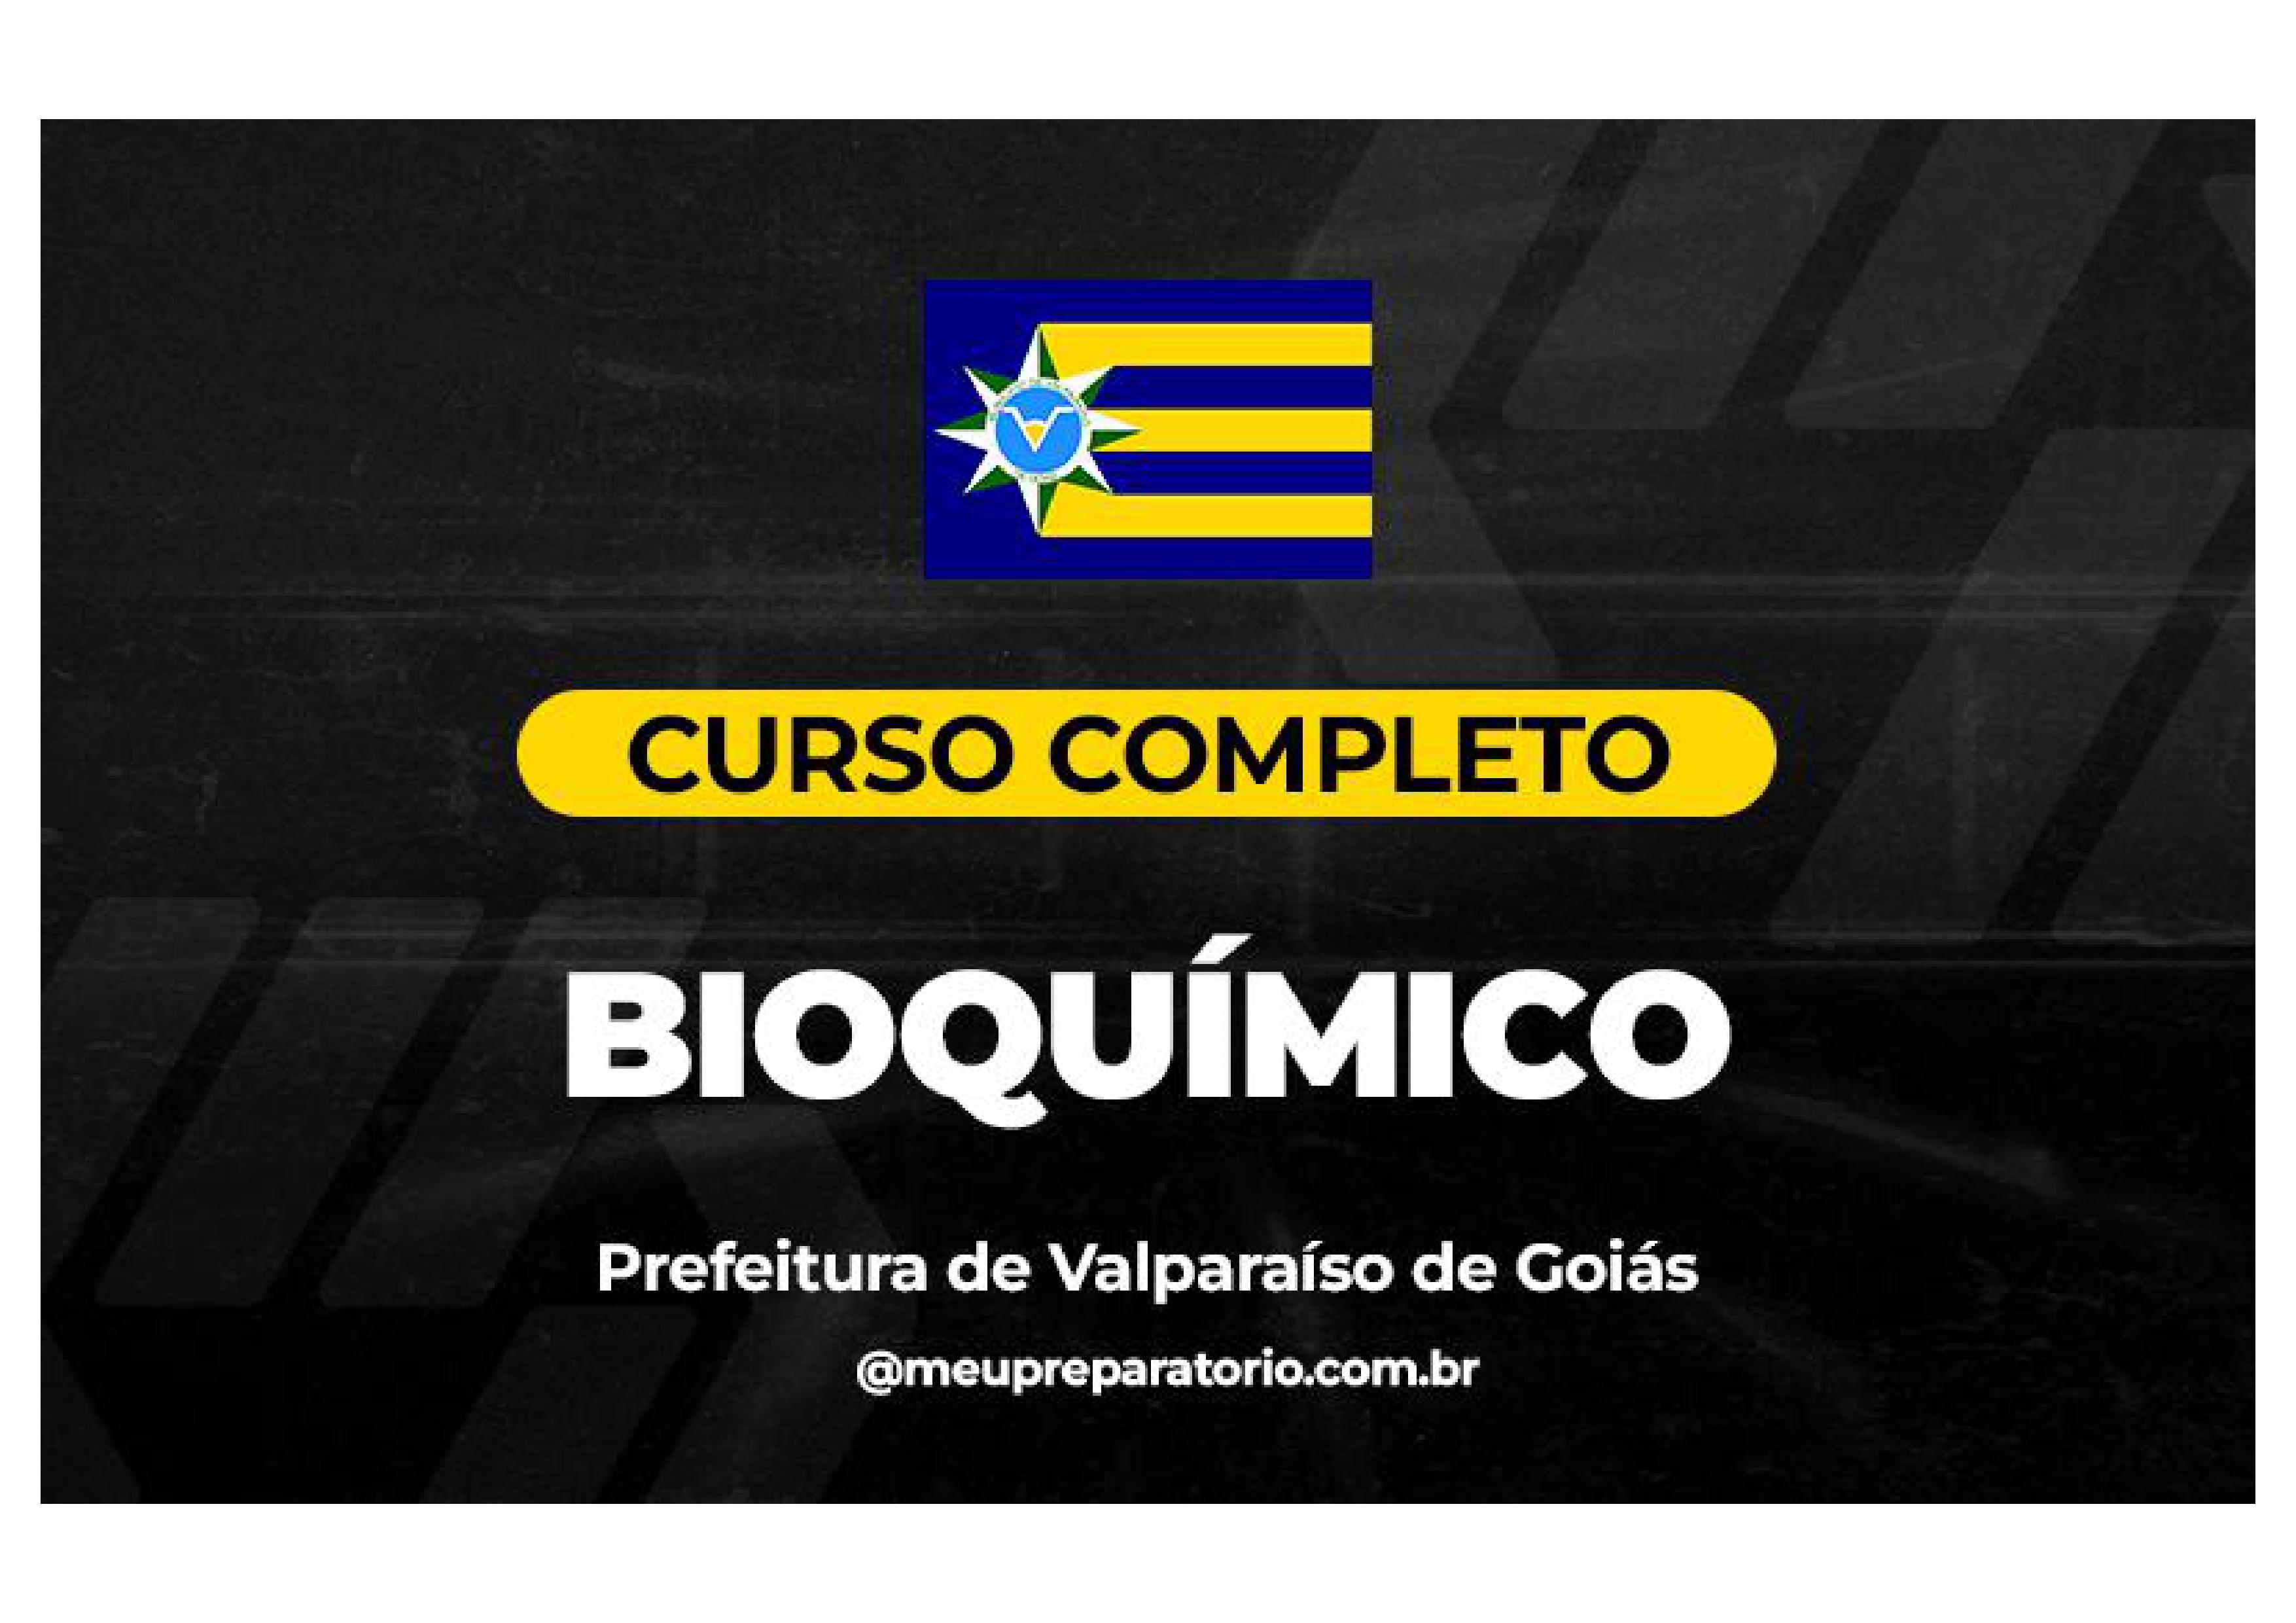 Bioquímico - Valparaíso (GO)